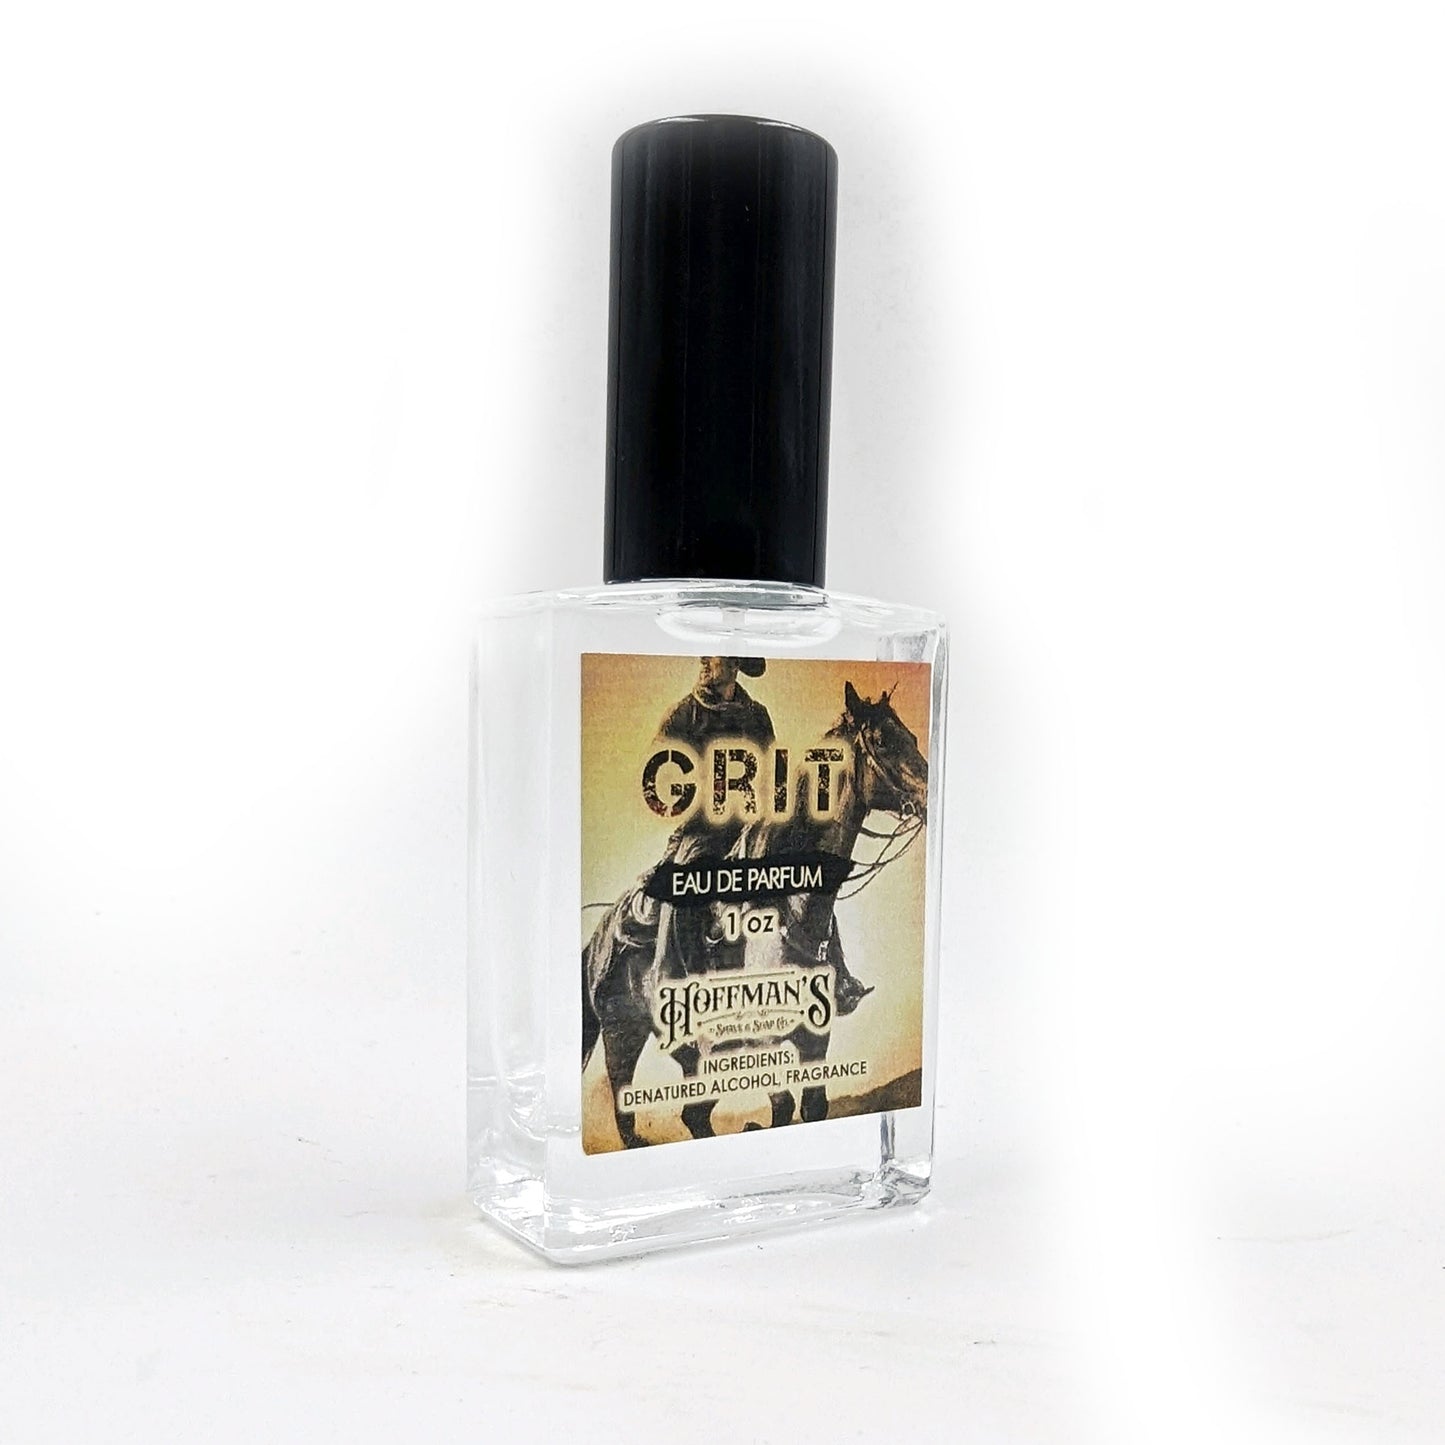 "GRIT" EDP 1oz Parfum Extrait Cologne